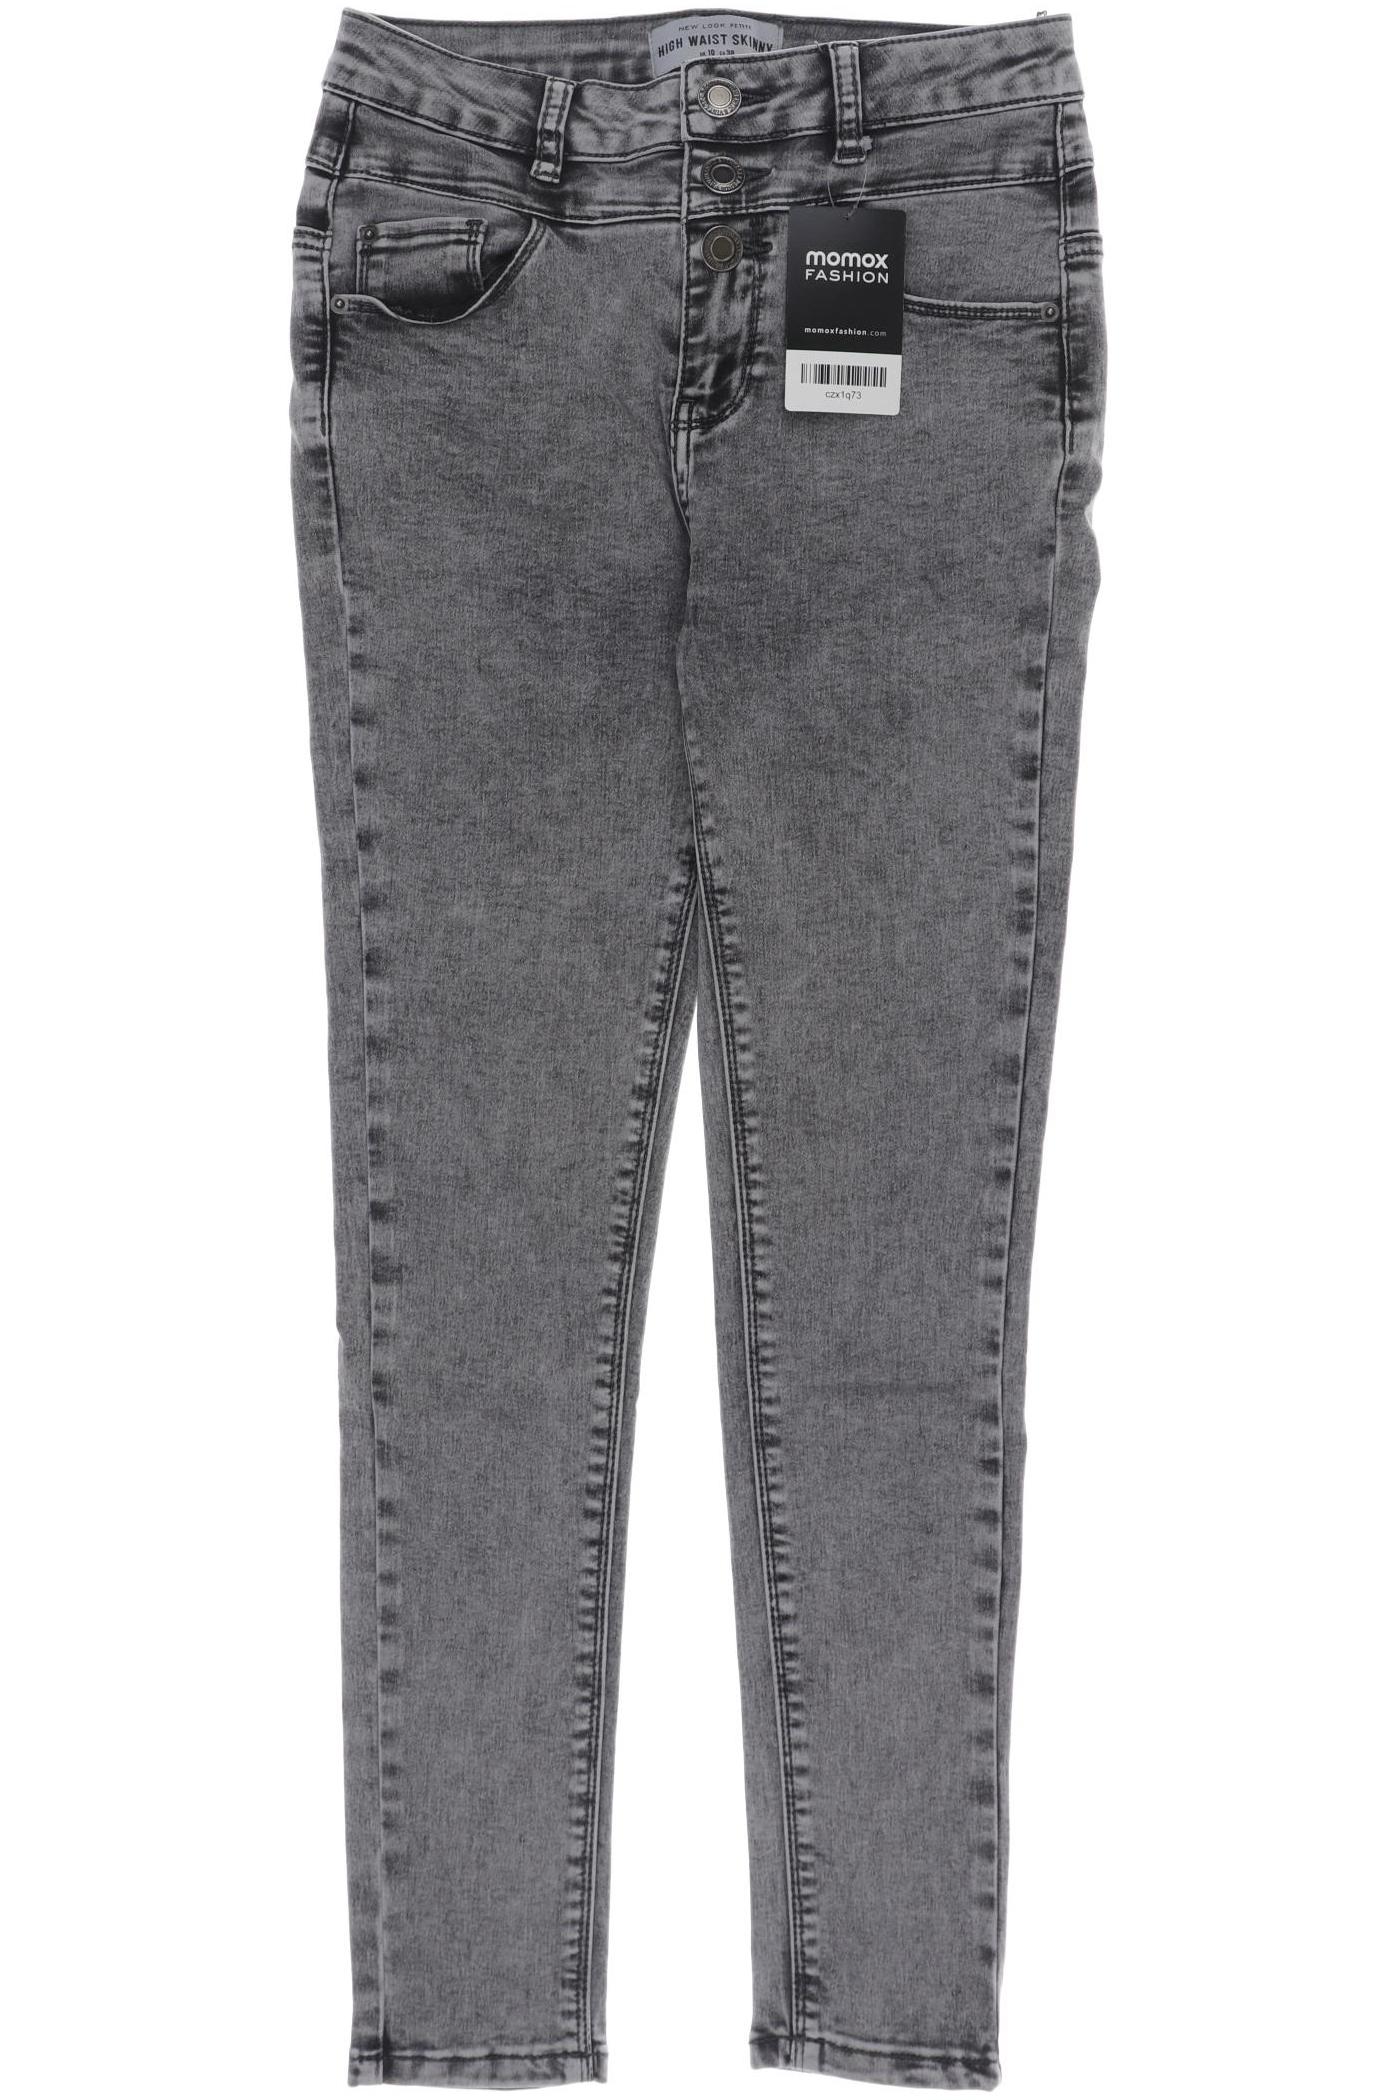 New Look Damen Jeans, grau, Gr. 38 von New Look